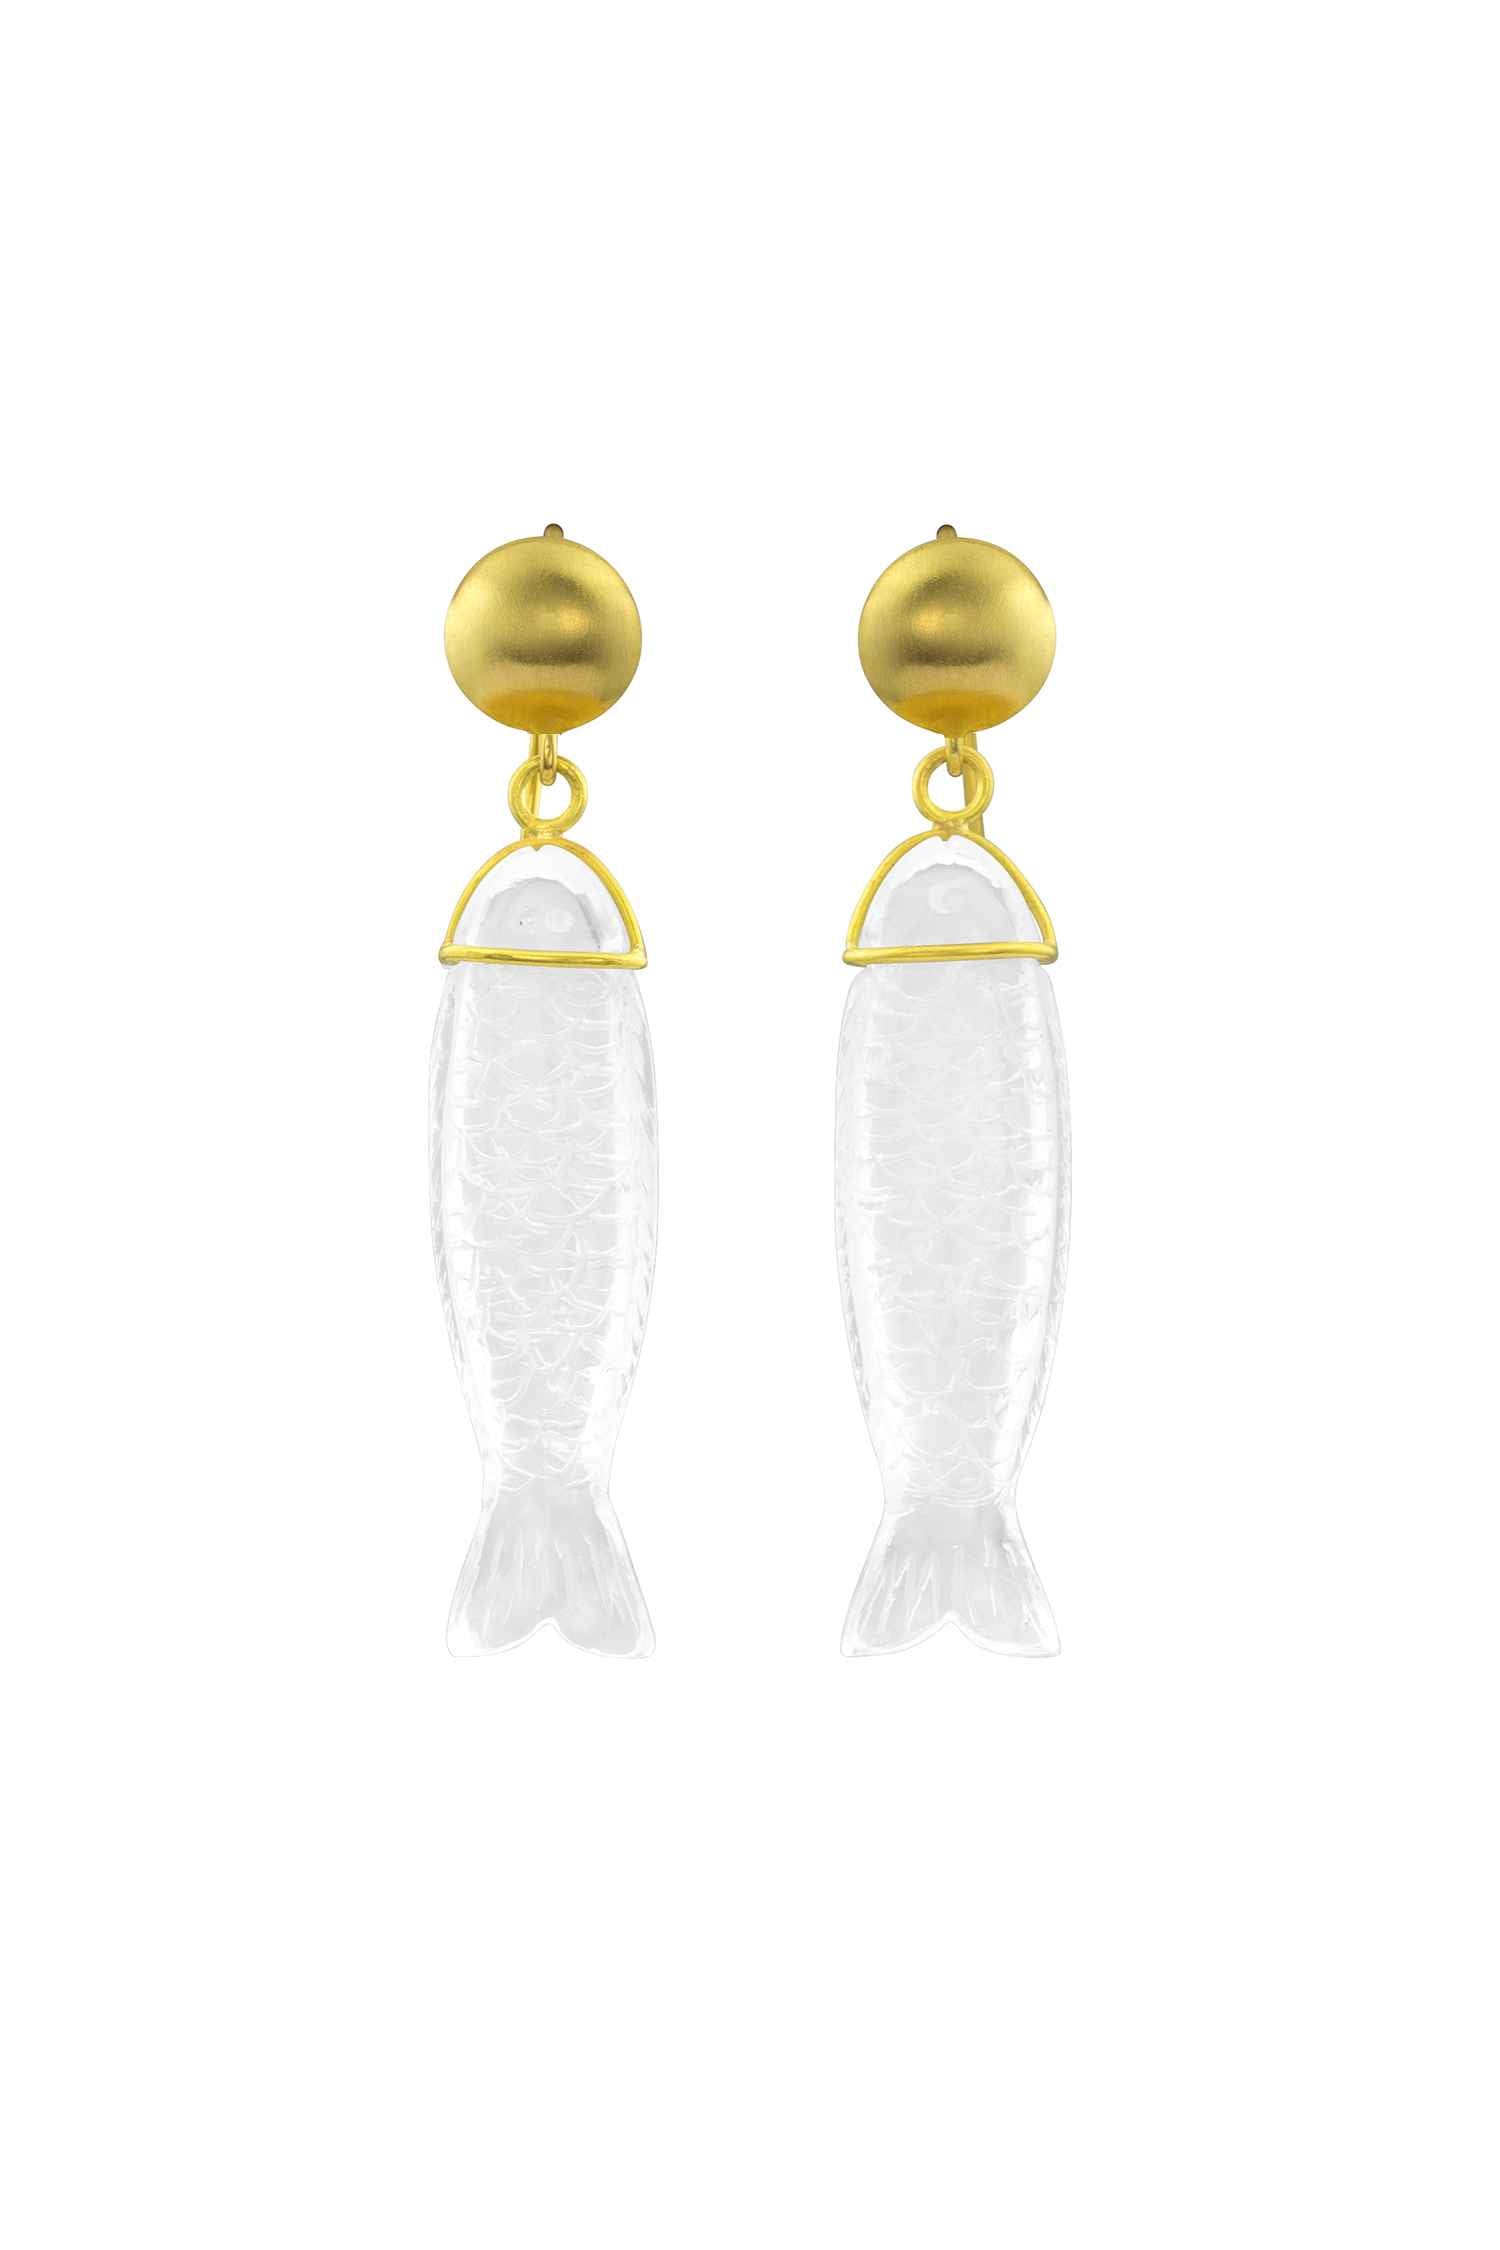 Silla Fish Earrings-Jewelry-Loren Nicole-Sorrel Sky Gallery